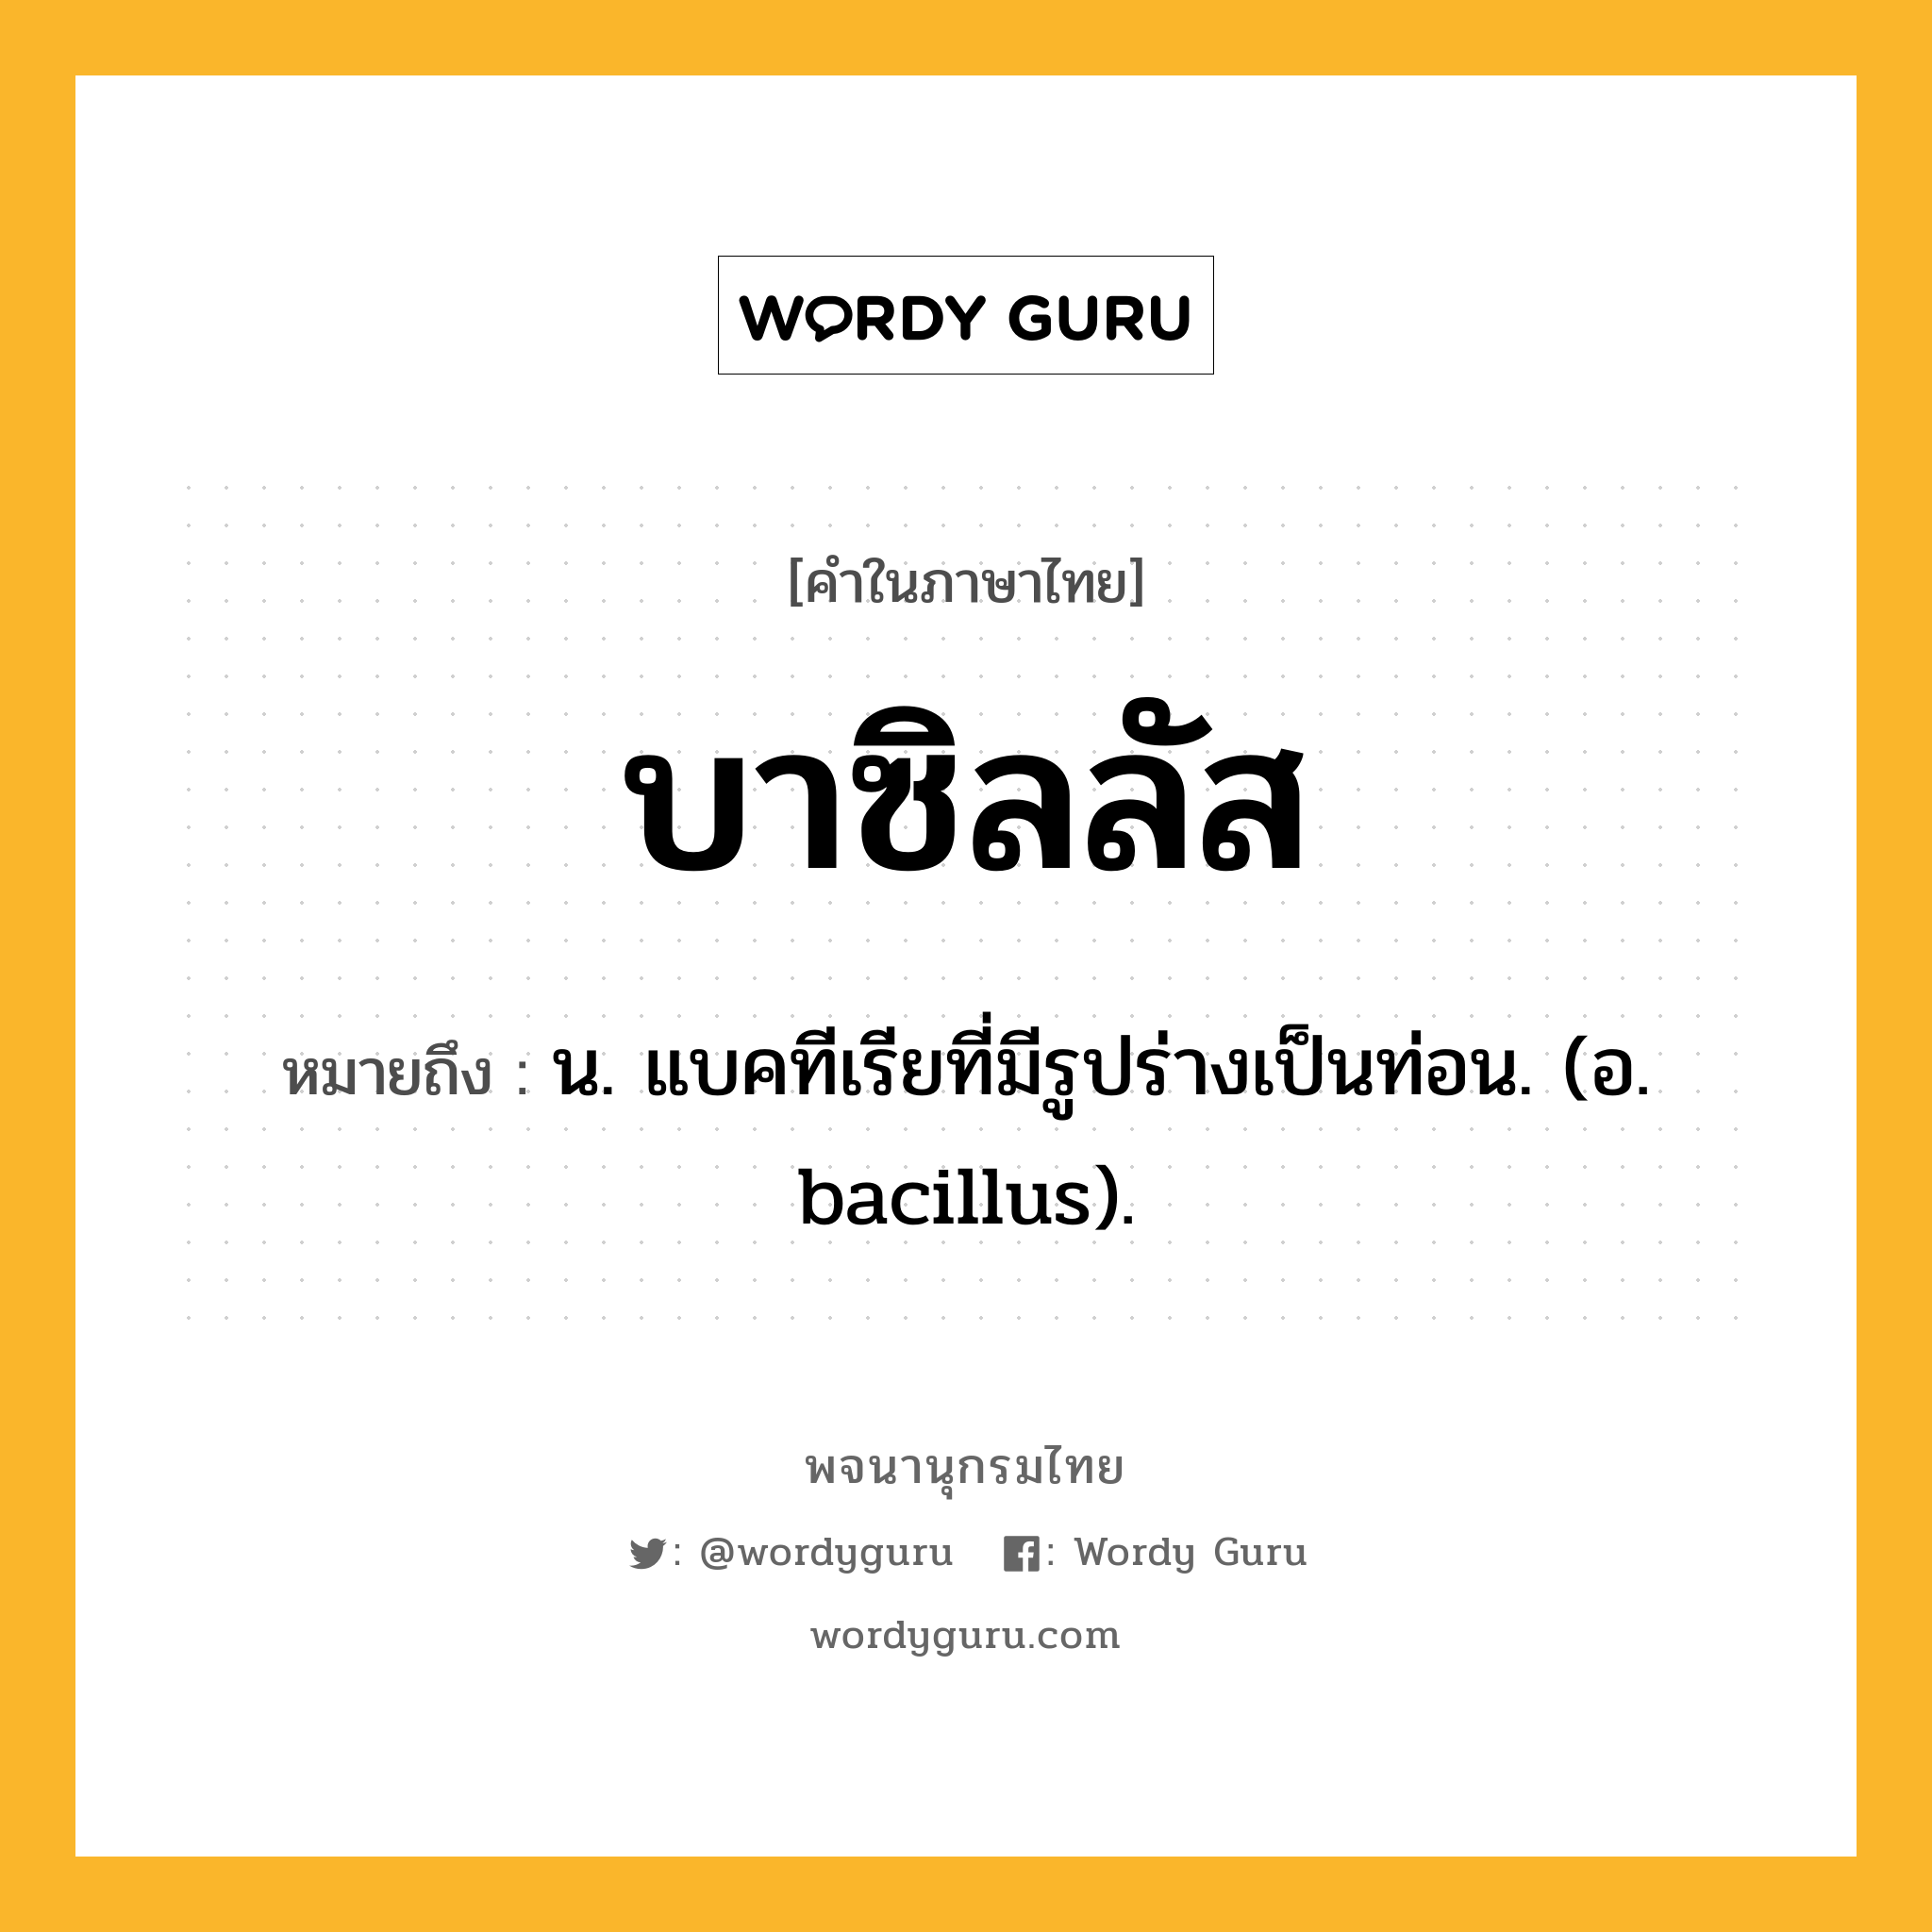 บาซิลลัส ความหมาย หมายถึงอะไร?, คำในภาษาไทย บาซิลลัส หมายถึง น. แบคทีเรียที่มีรูปร่างเป็นท่อน. (อ. bacillus).